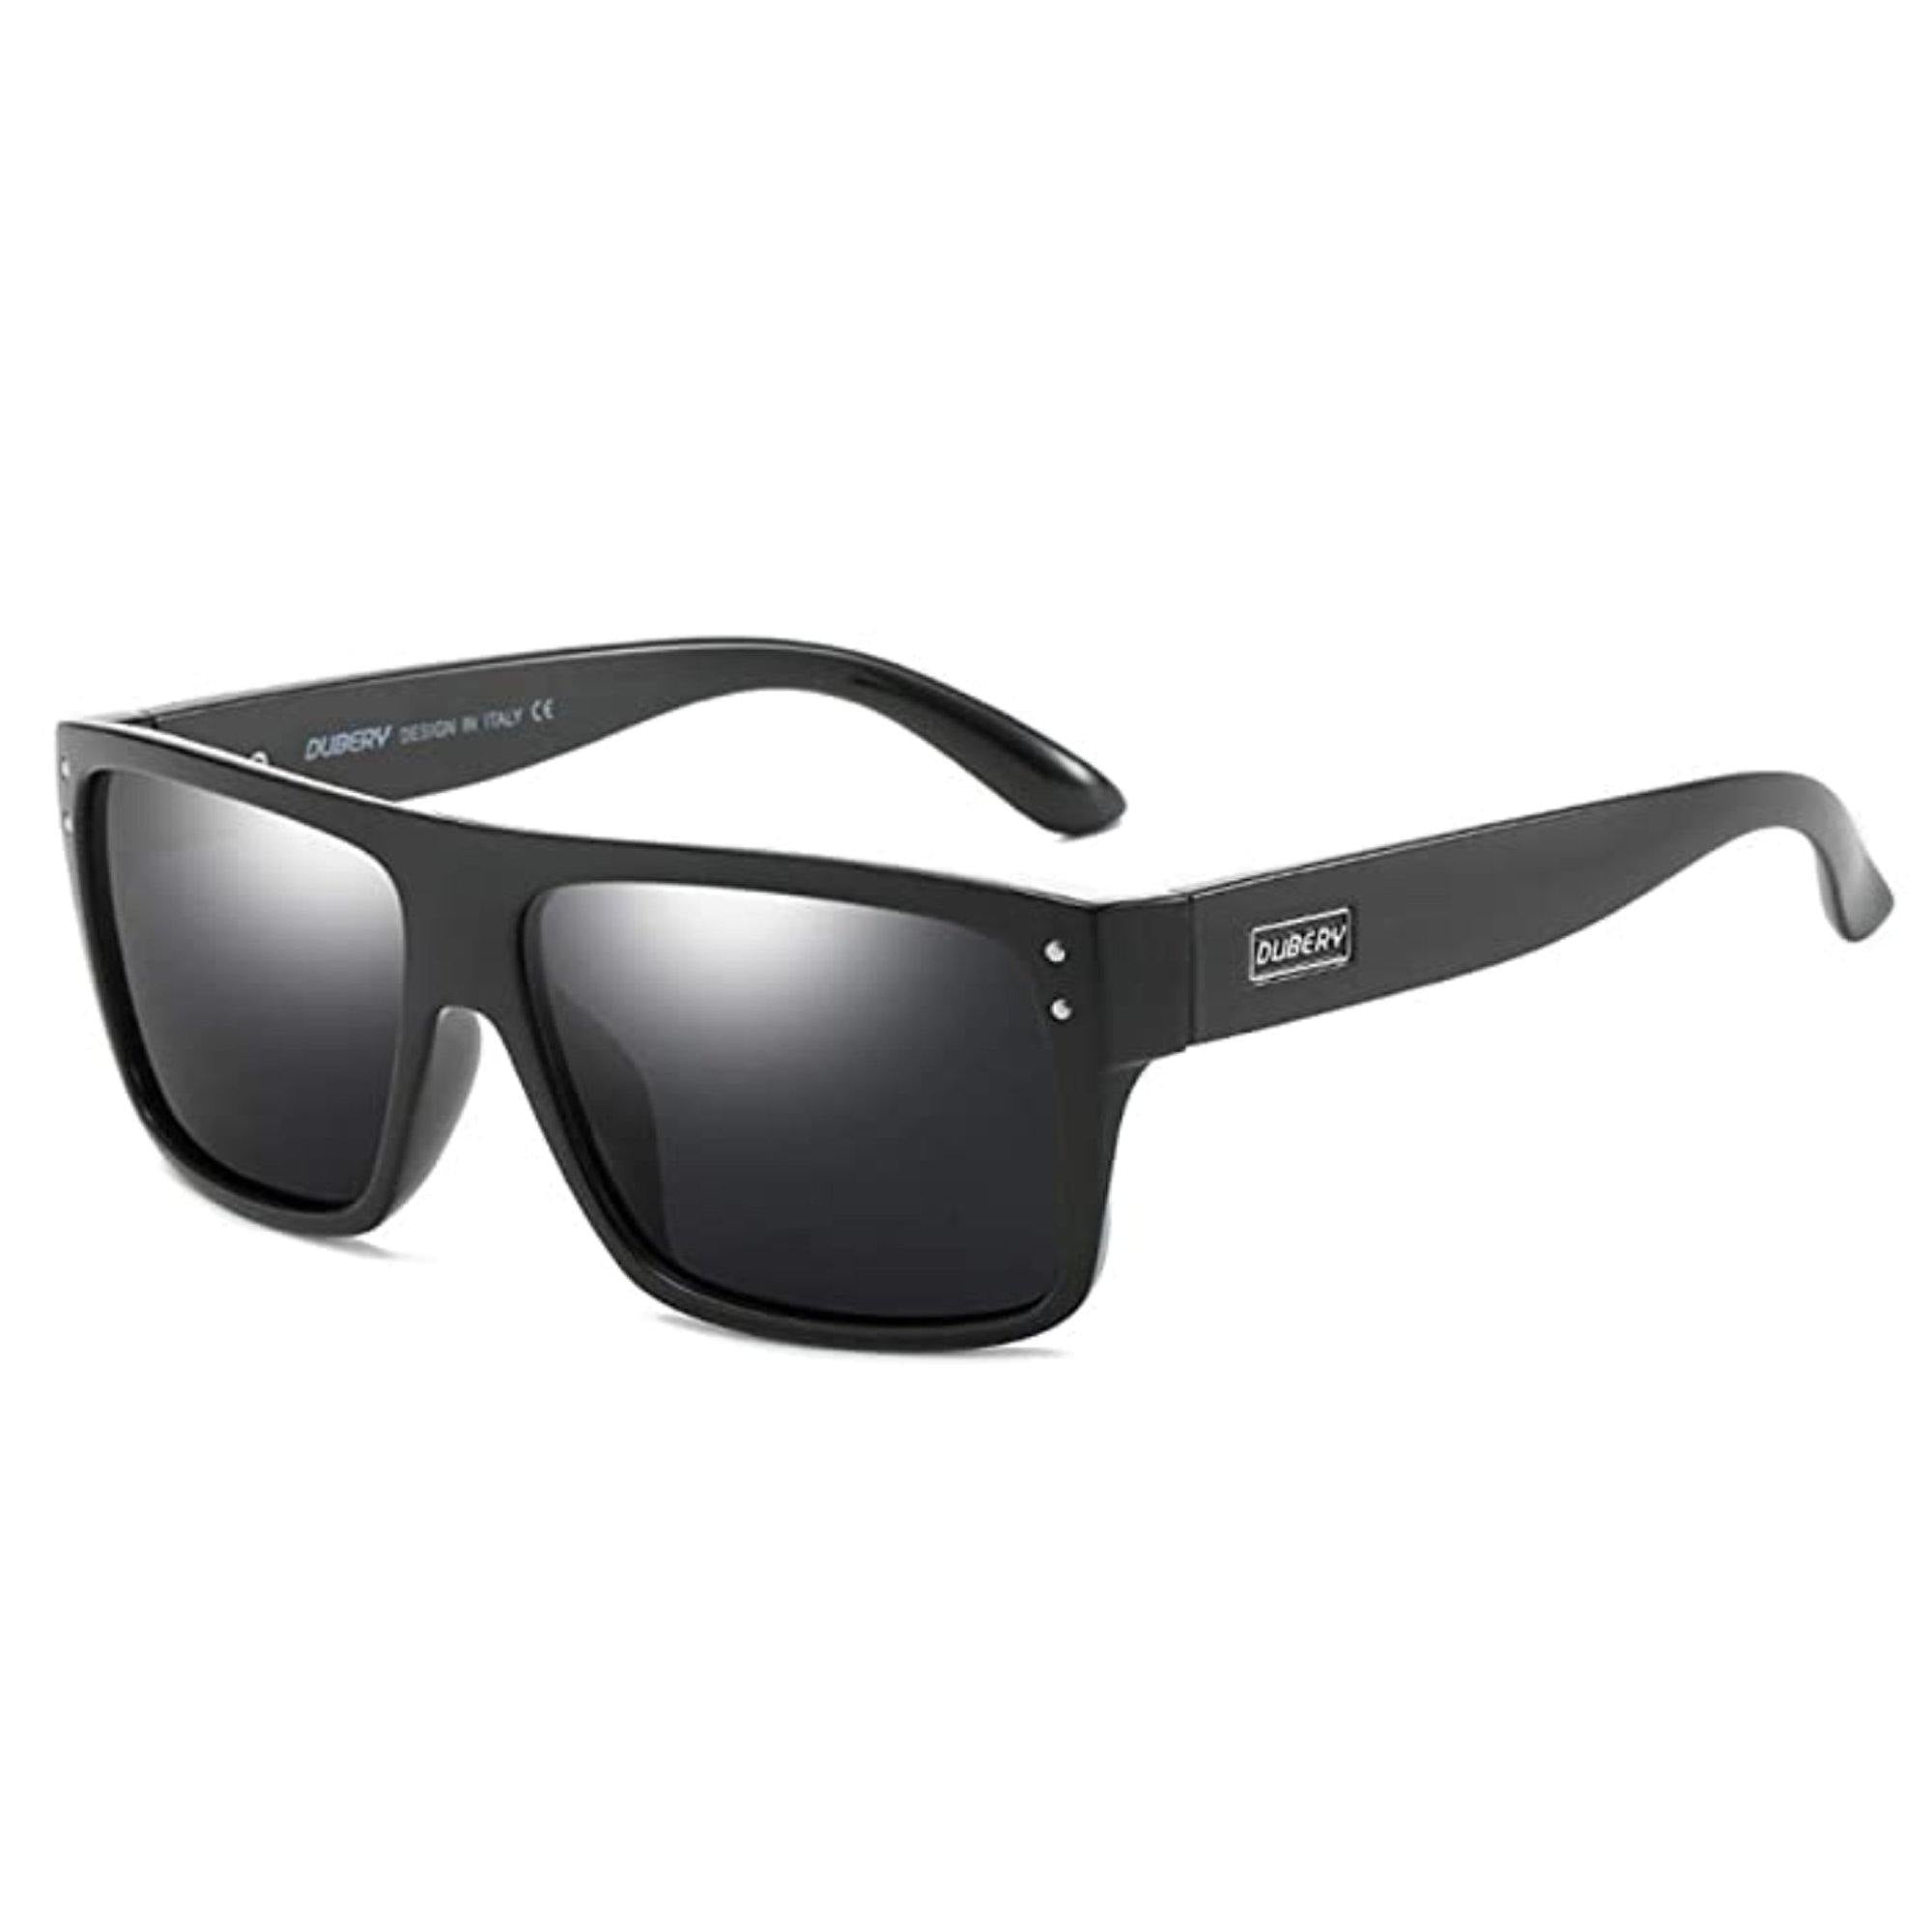 Dubery Sunglasses D911– Dubery Optics Sunglasses